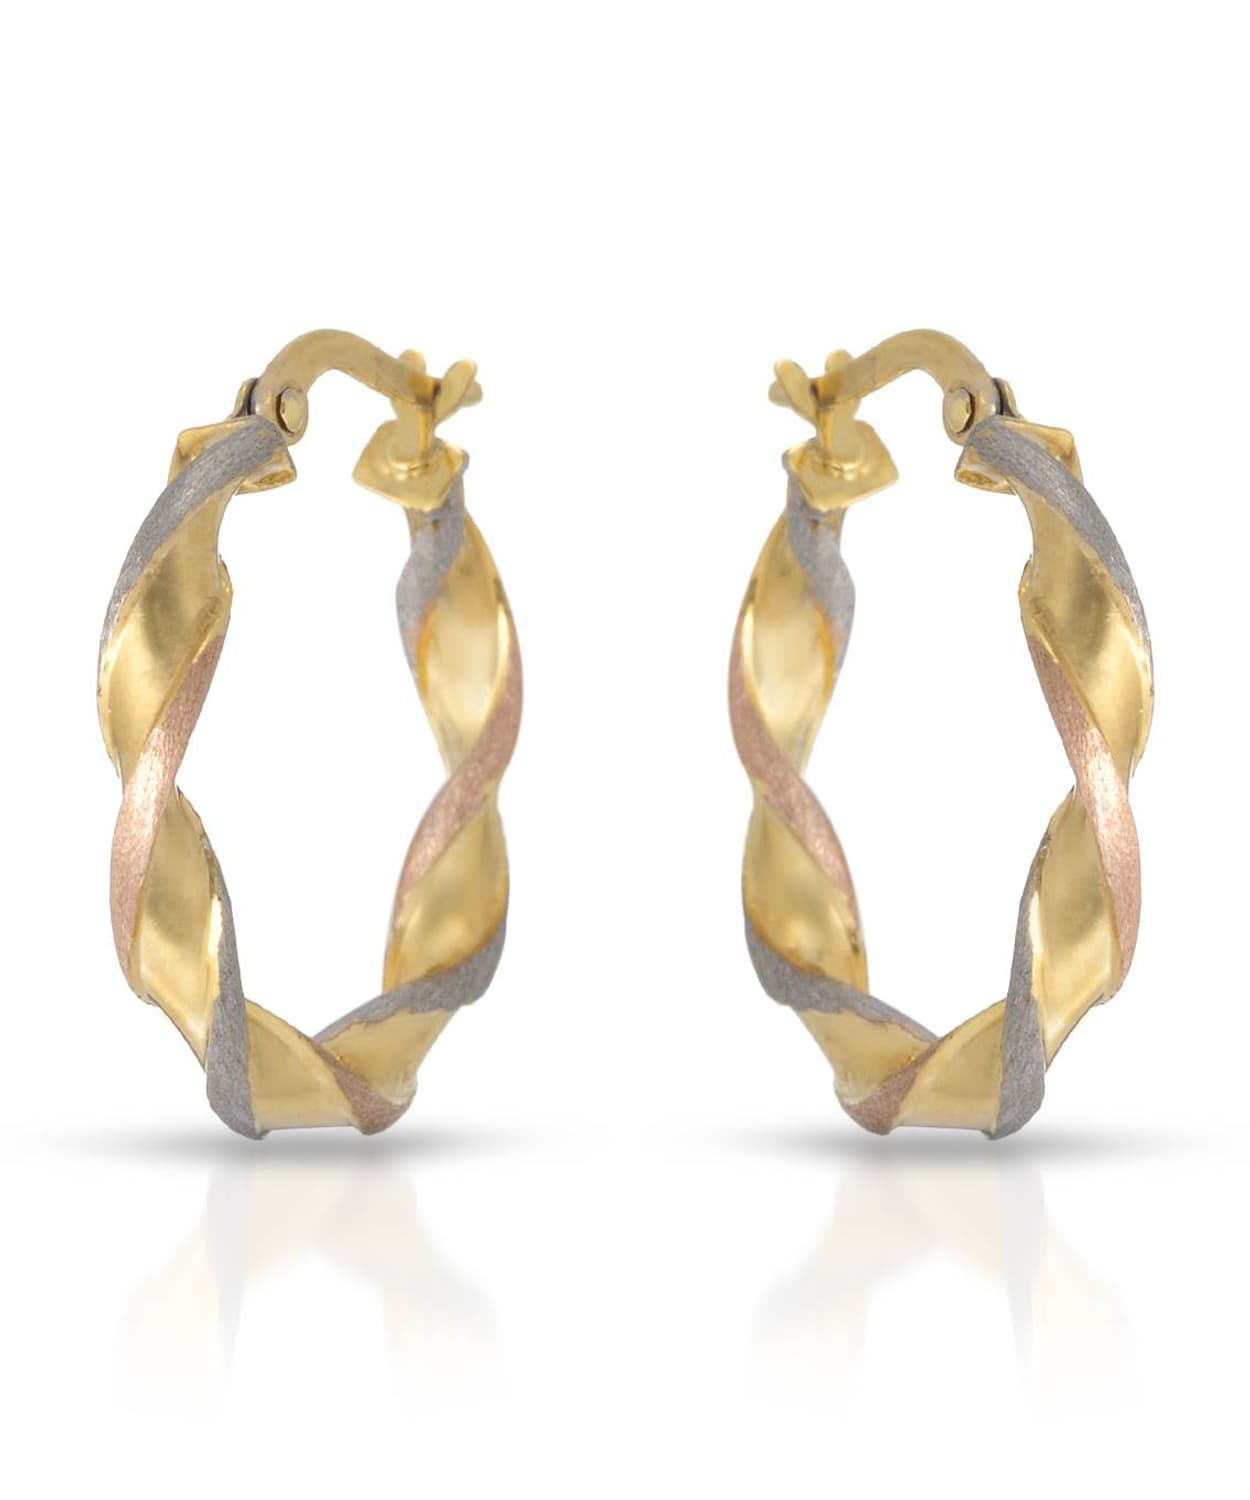 Esemco 10k Tri-Tone Gold Twist Hoop Earrings View 1